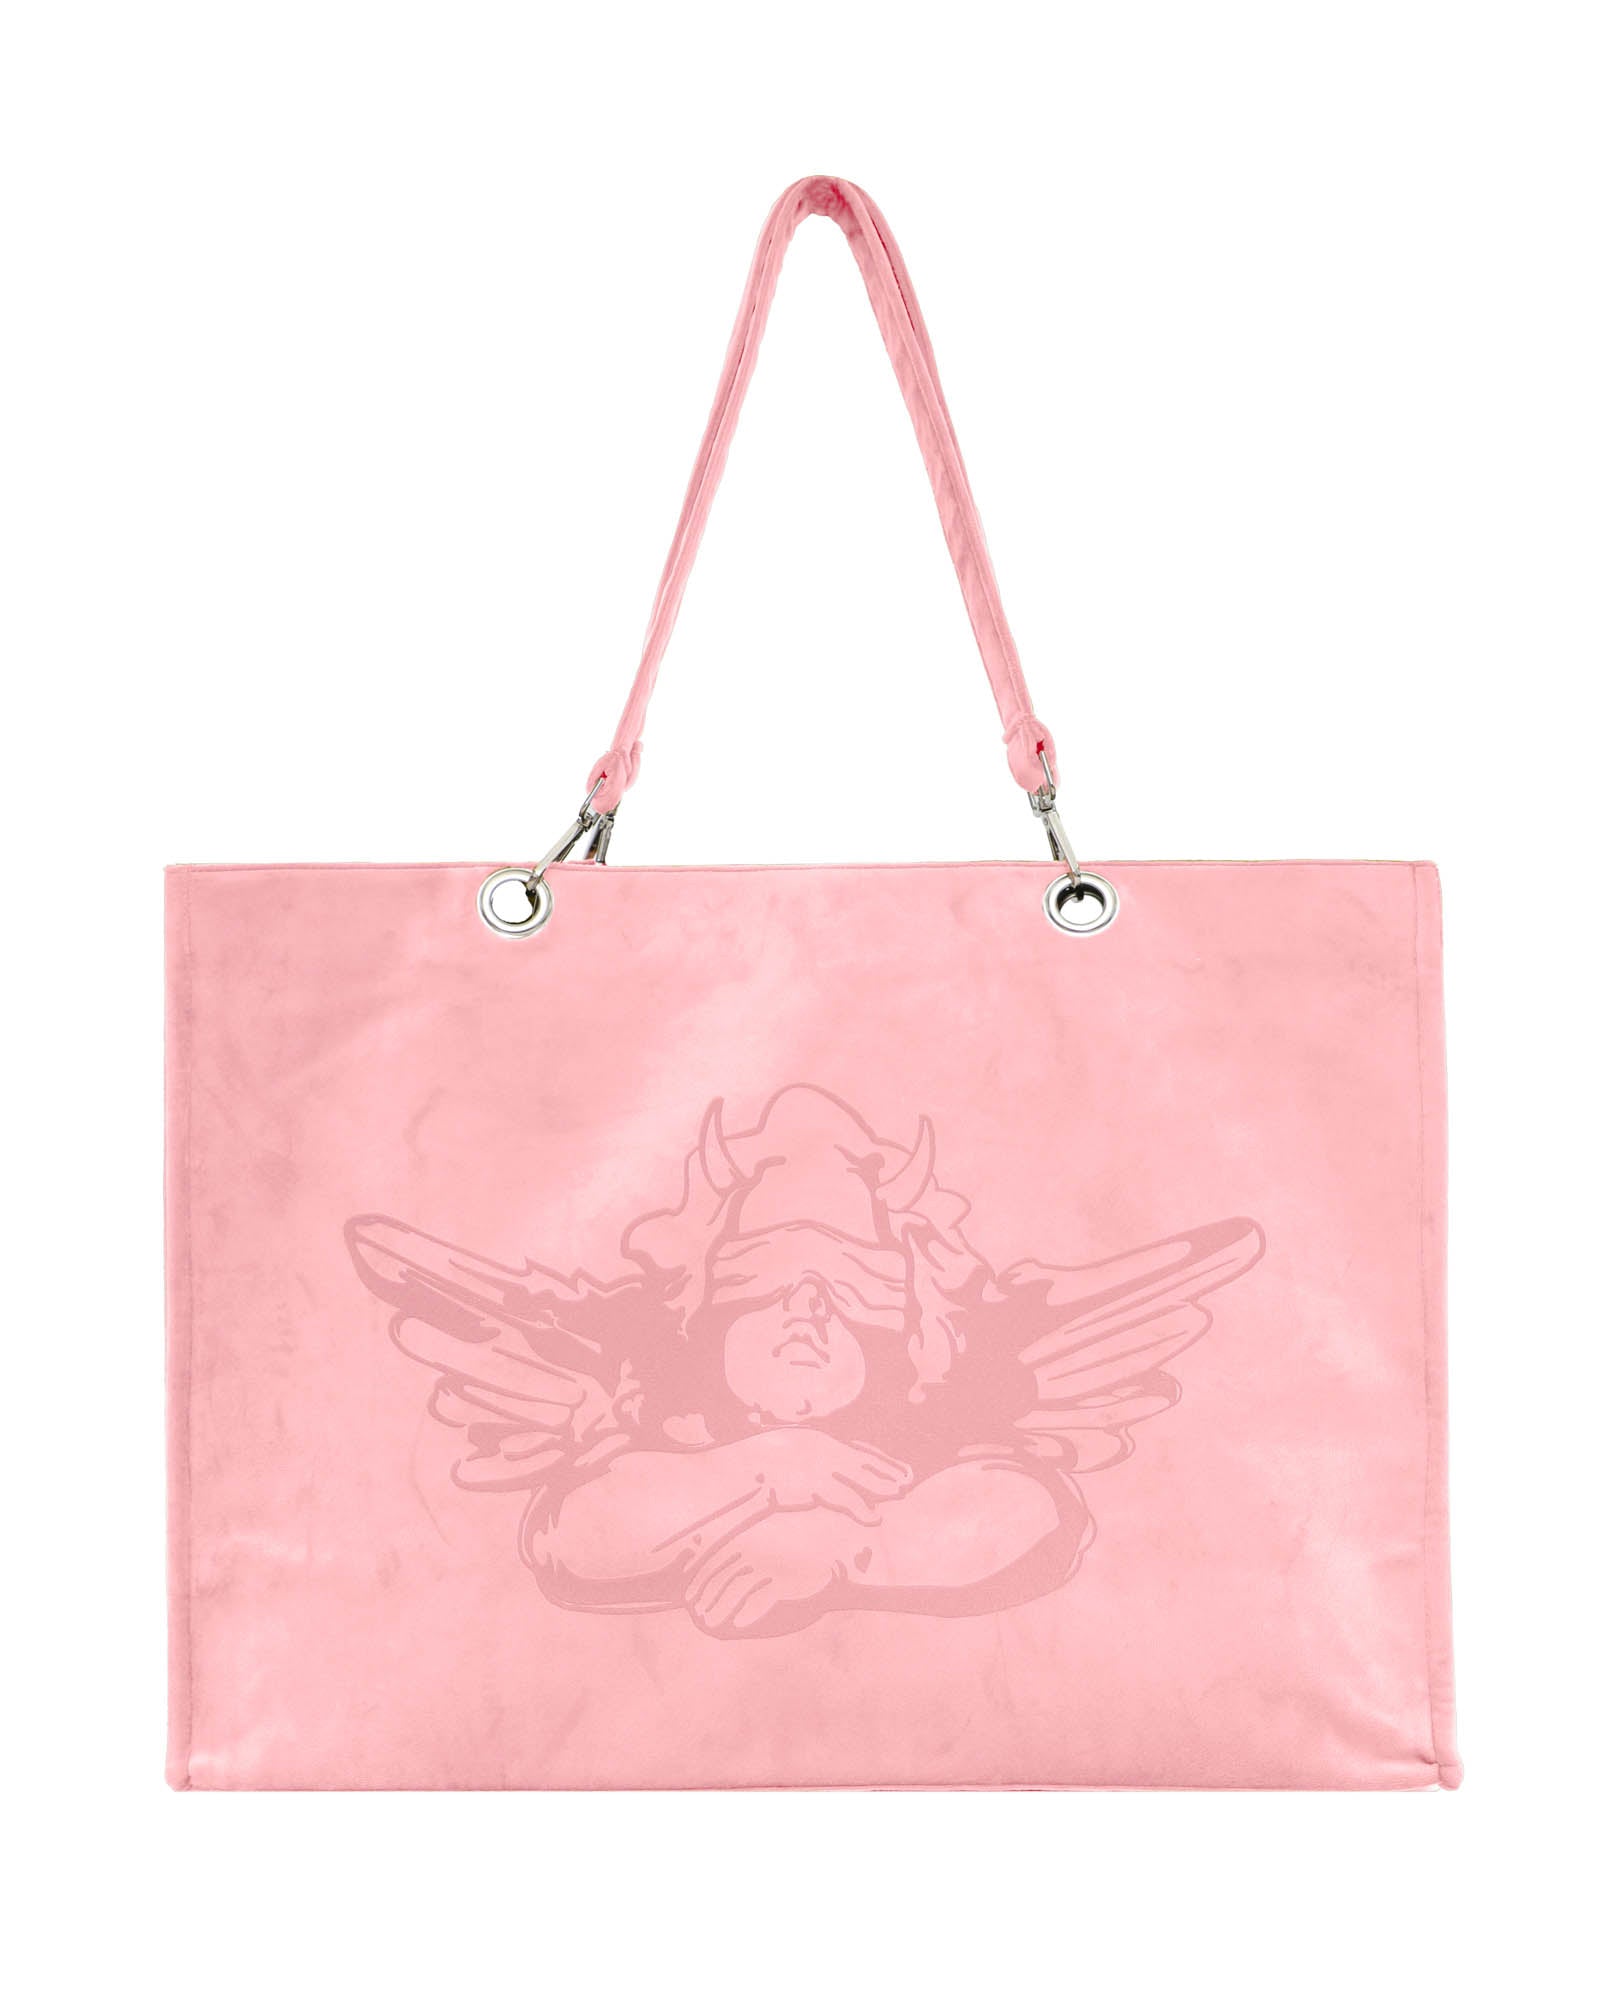 My Victorias Secret tote bag : r/handbags